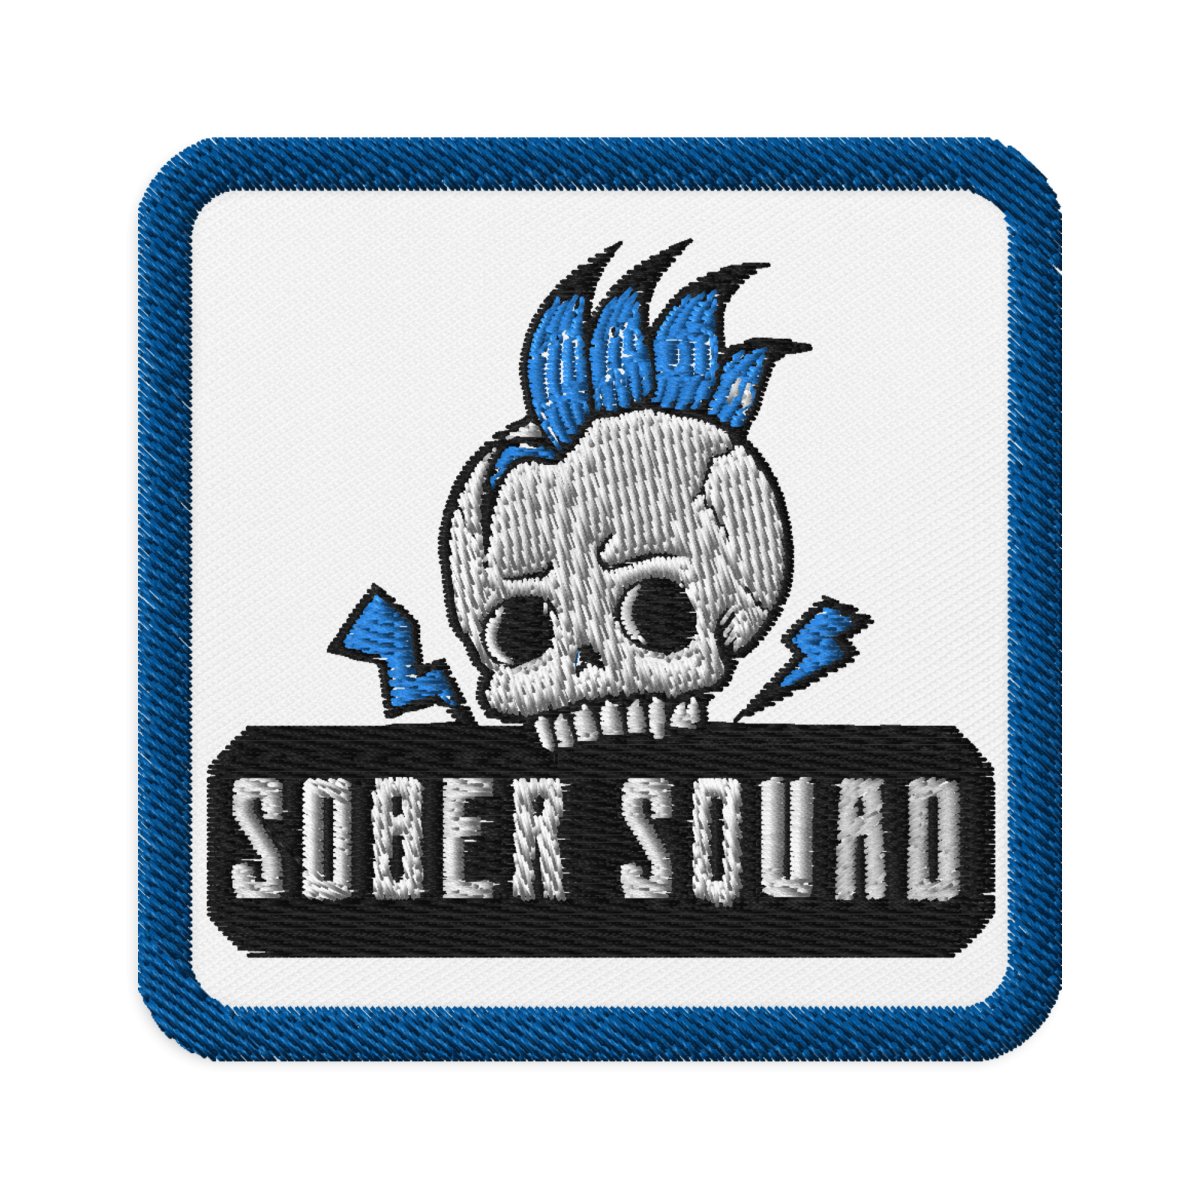 Sober Squad Punk Skull Embroidered Patch - Sobervation